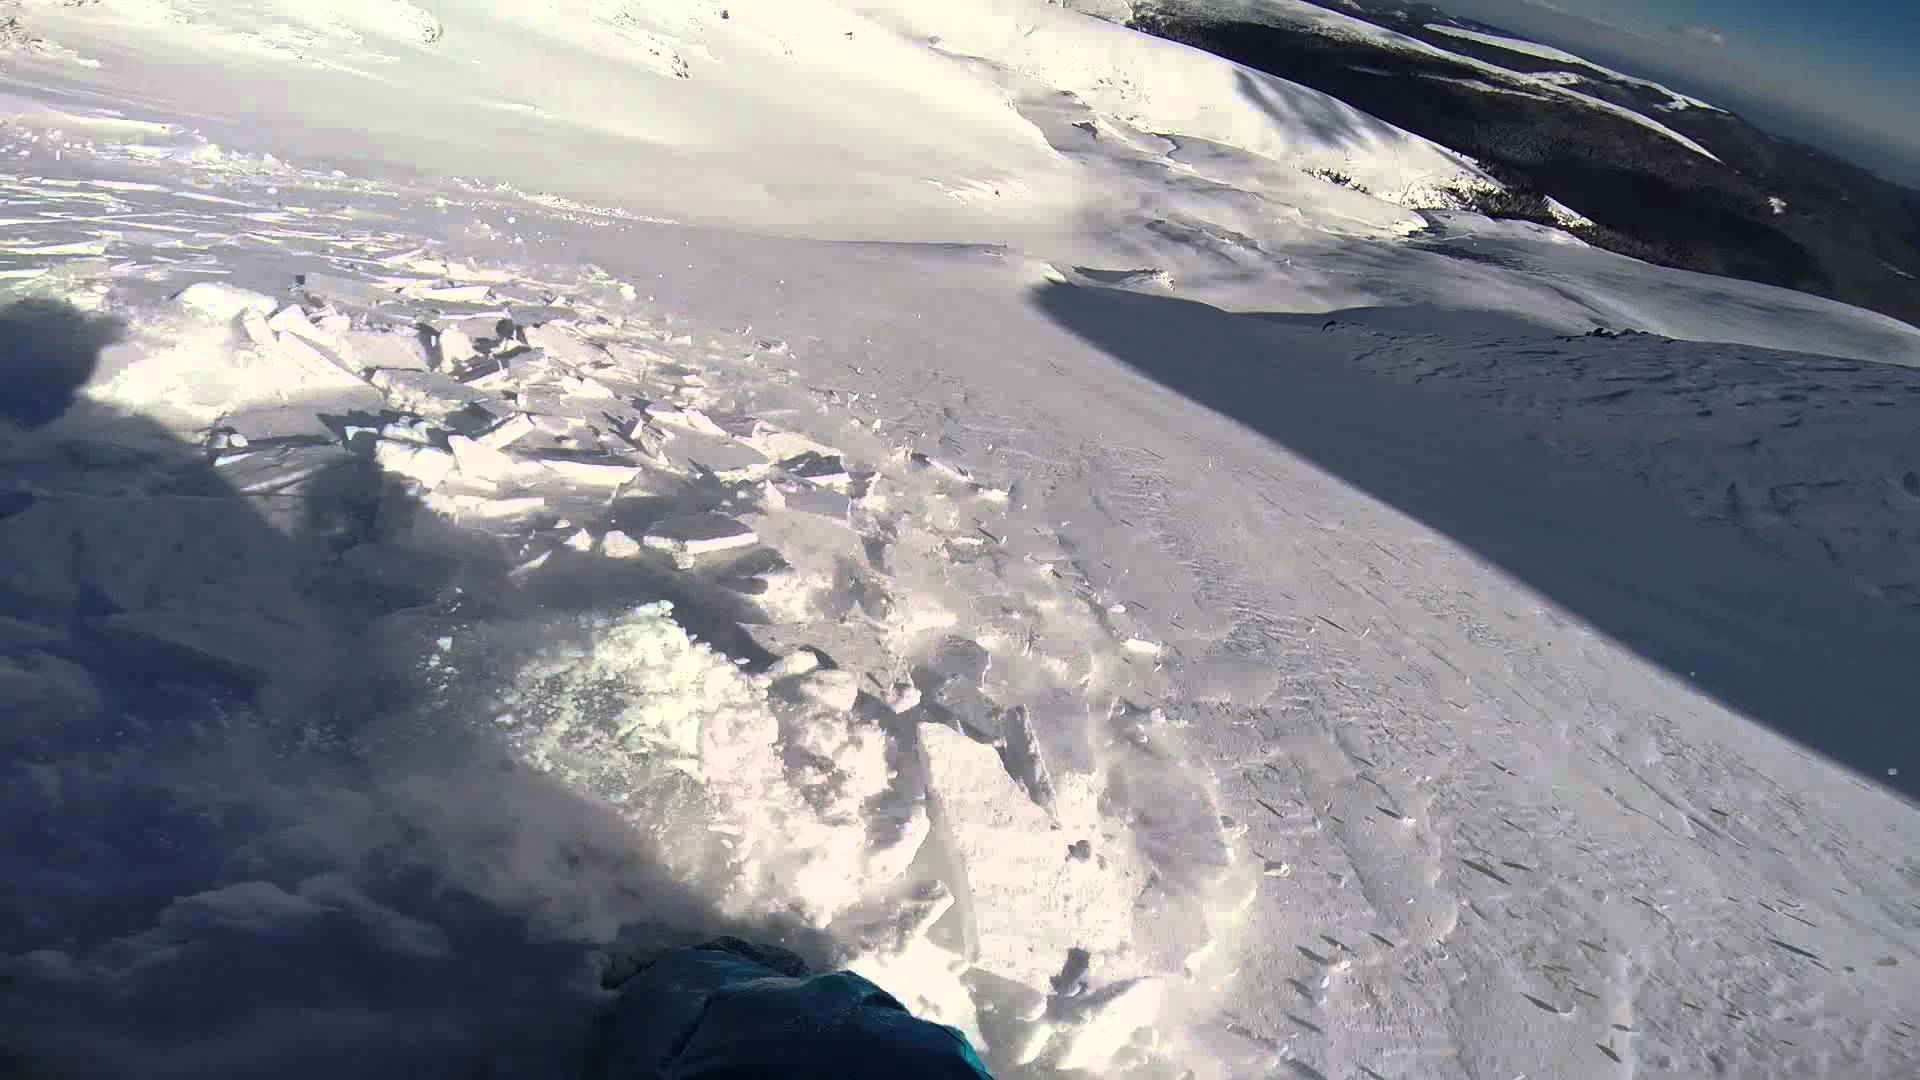 Snowboarder filma avalanche e sobrevive sem ferimentos.